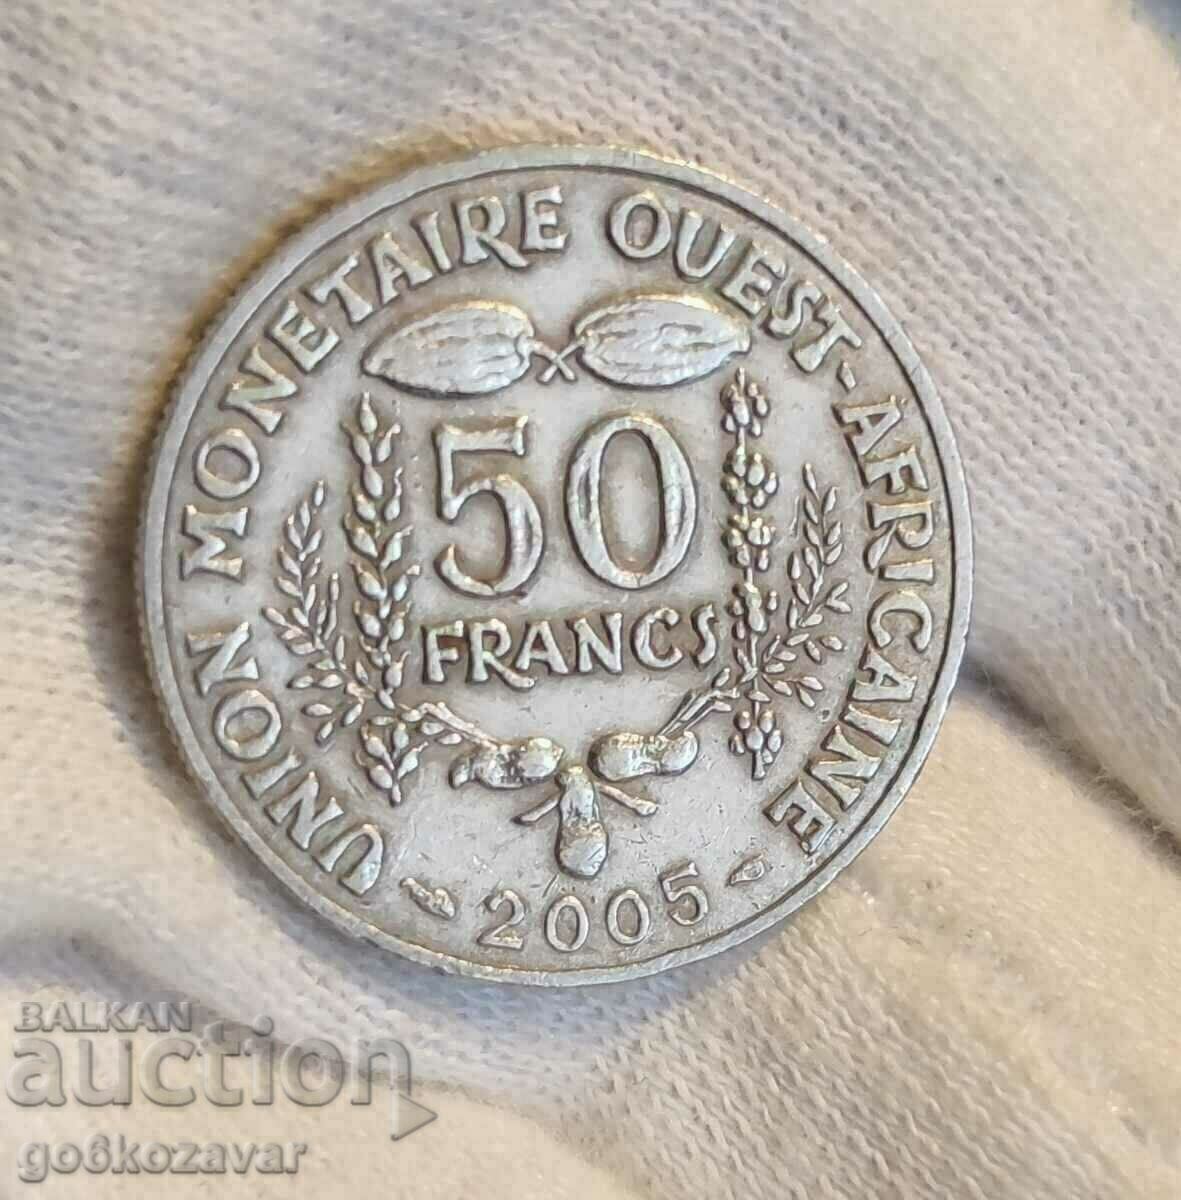 Africa de Vest 50 de franci 2005